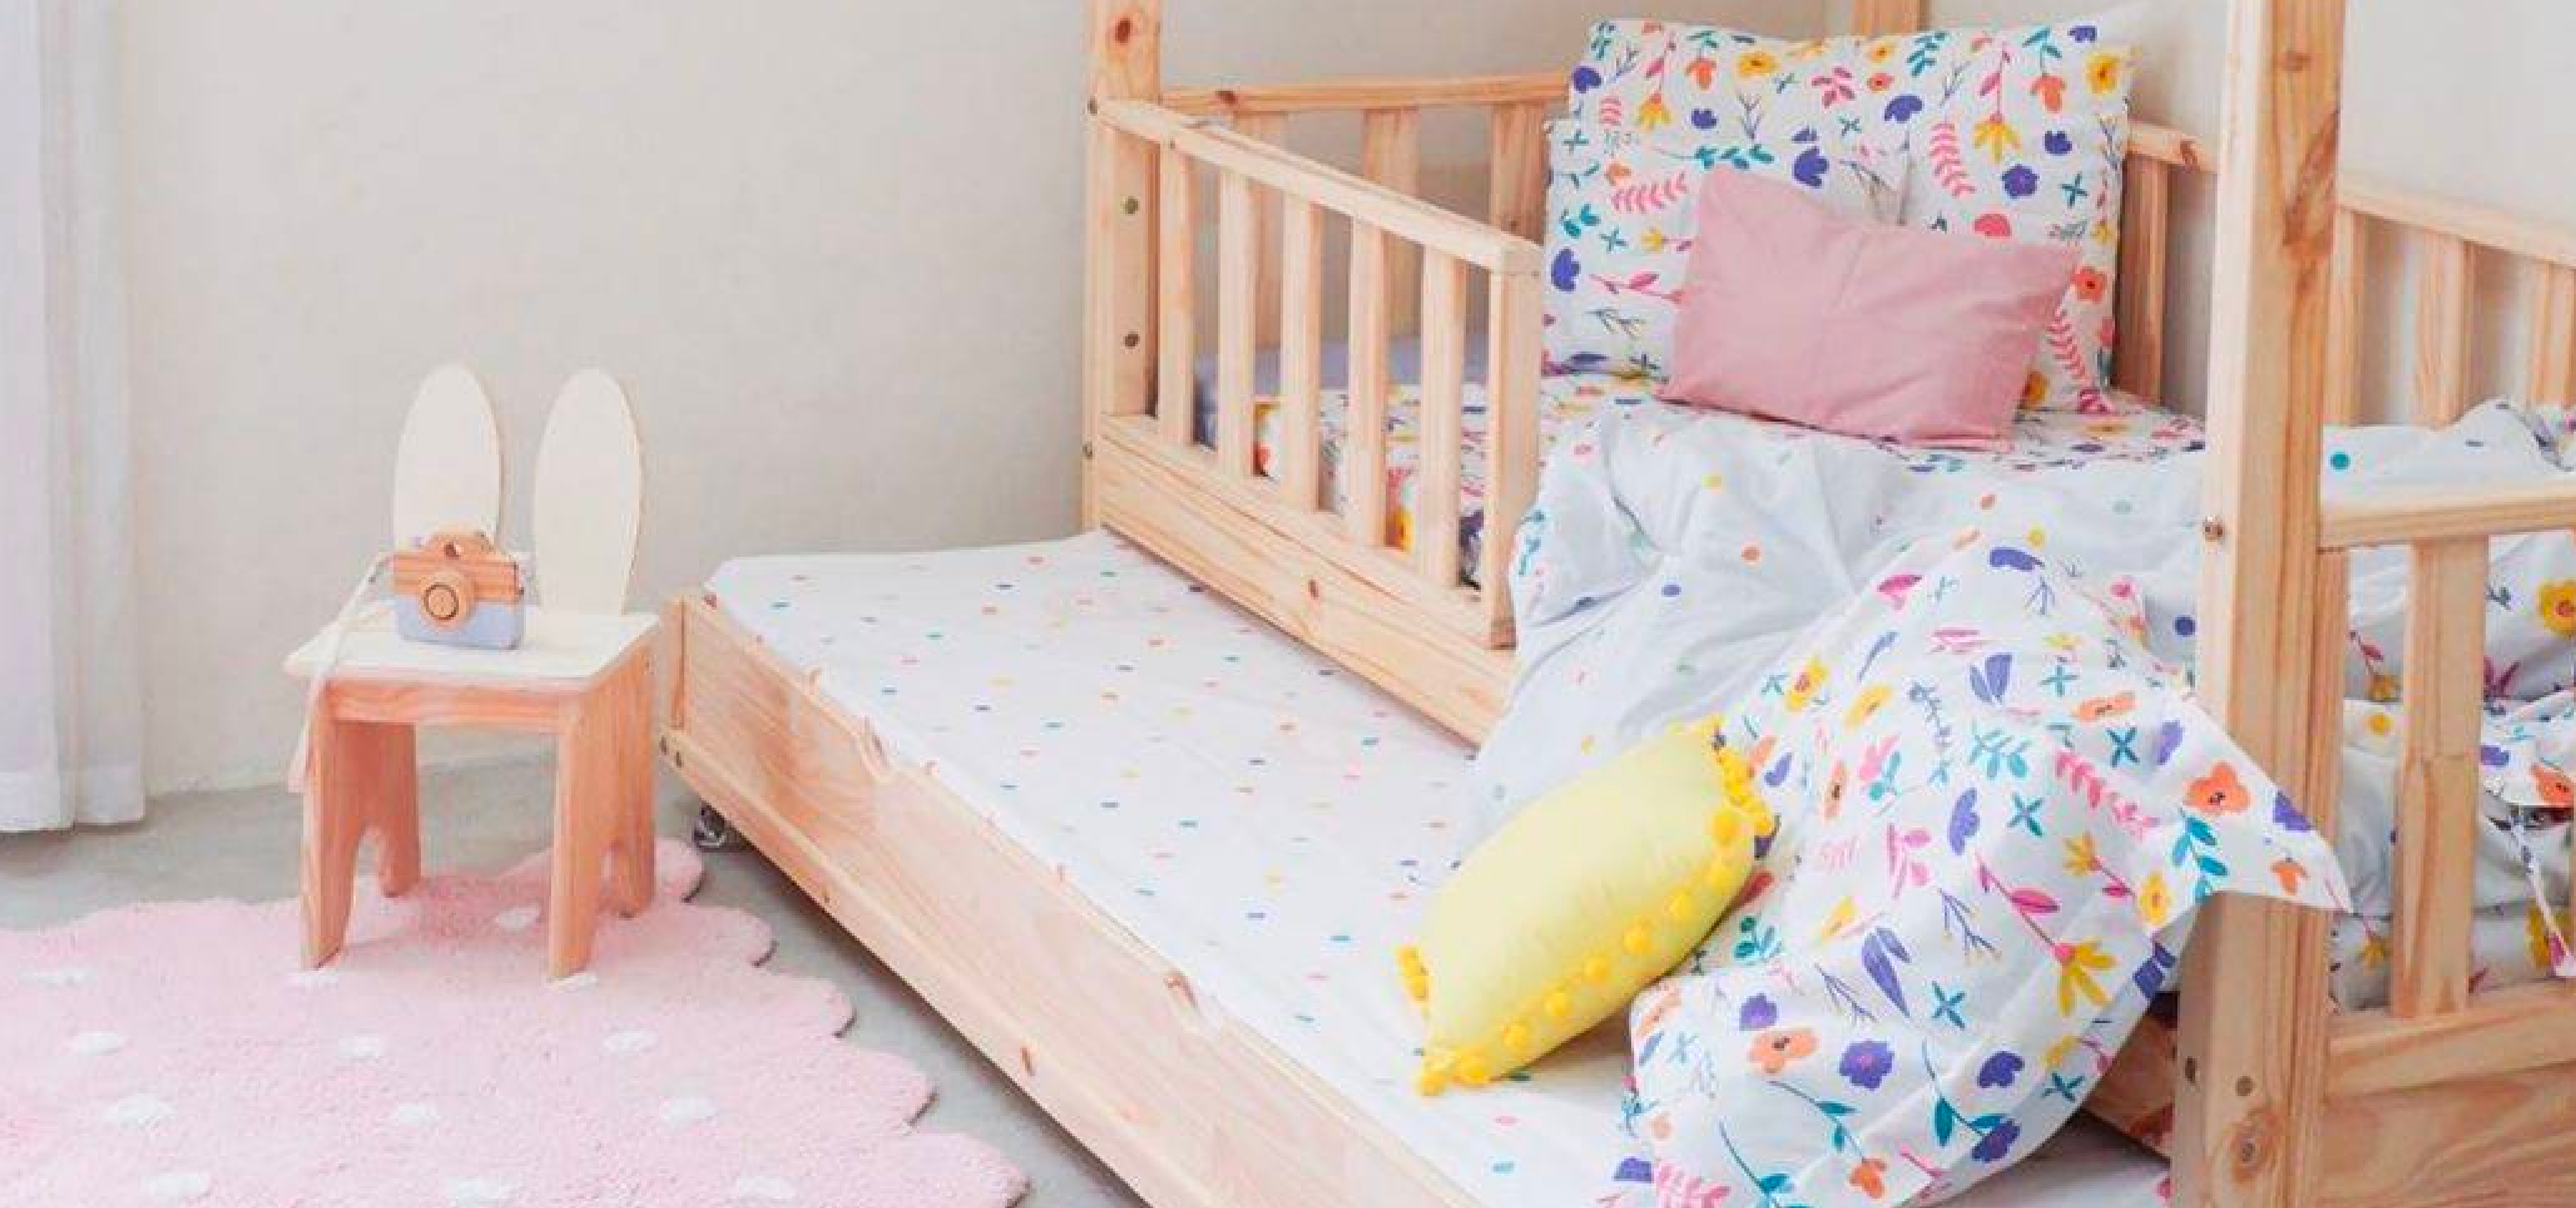 Es hora de que tu bebé pase de la cuna a la cama? – Mamás Mateas